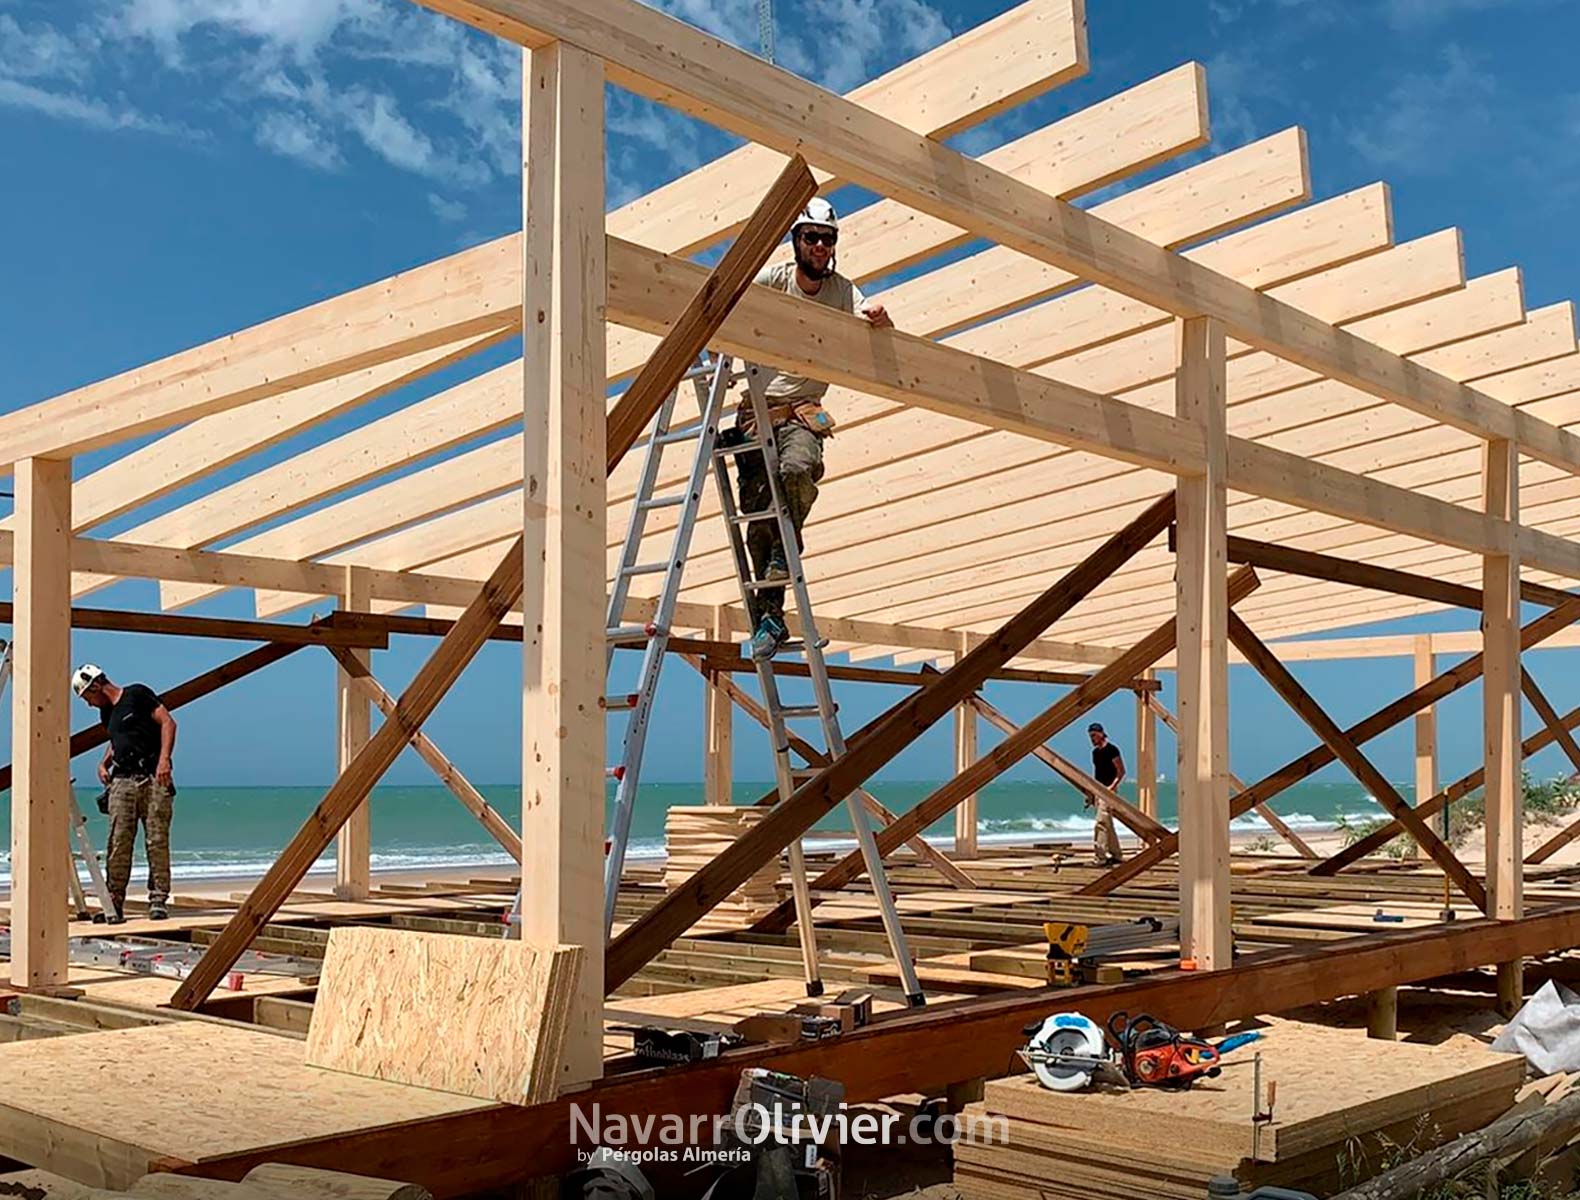 Construcción estructural en madera laminada. Chiringuito Los Esteros, Cádiz